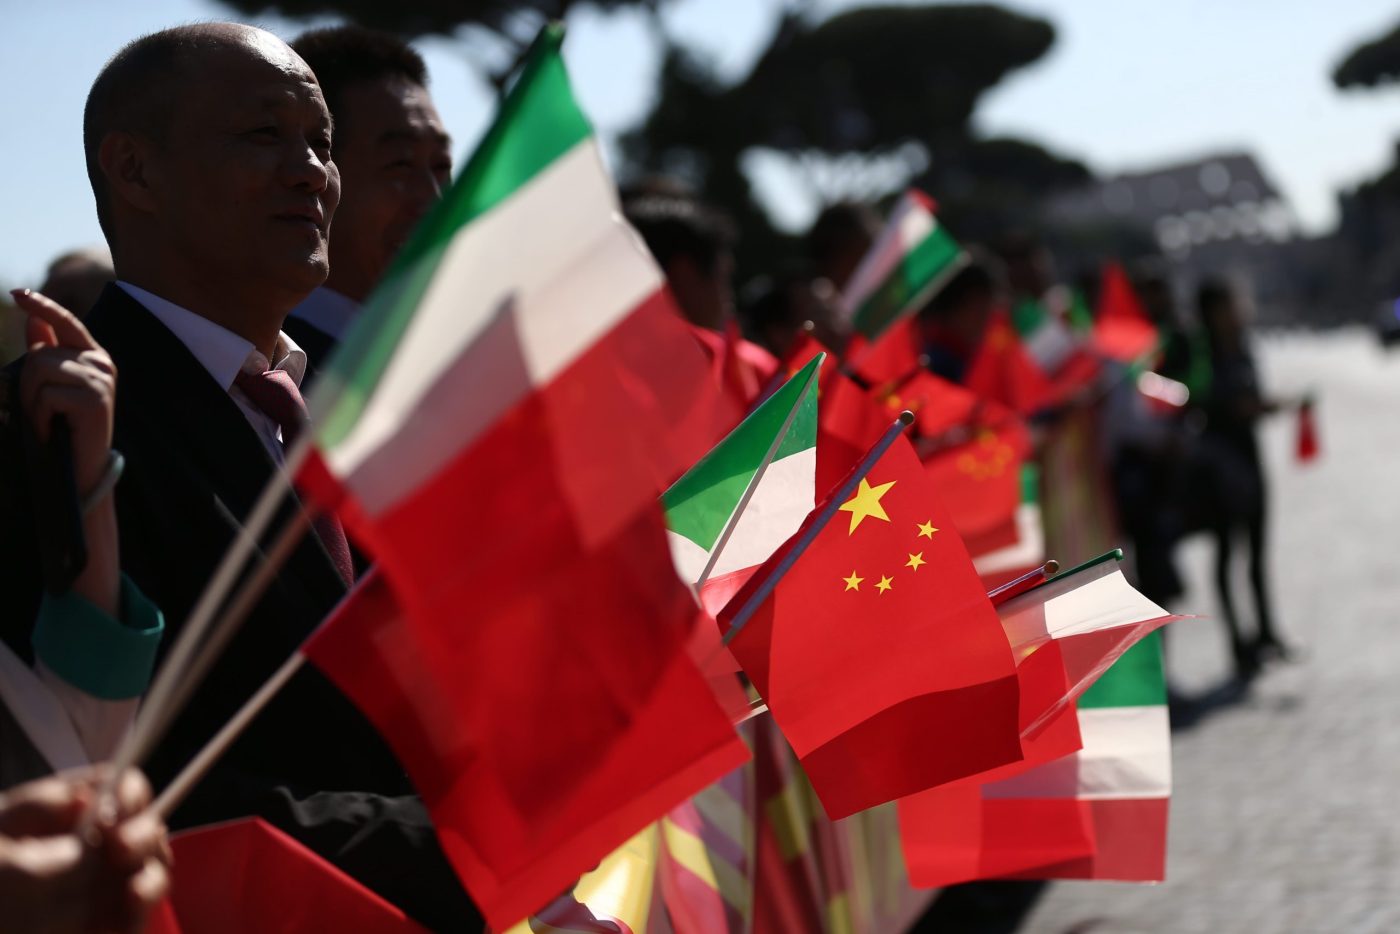 Un tribunale italiano ha respinto la richiesta di estradizione della Cina